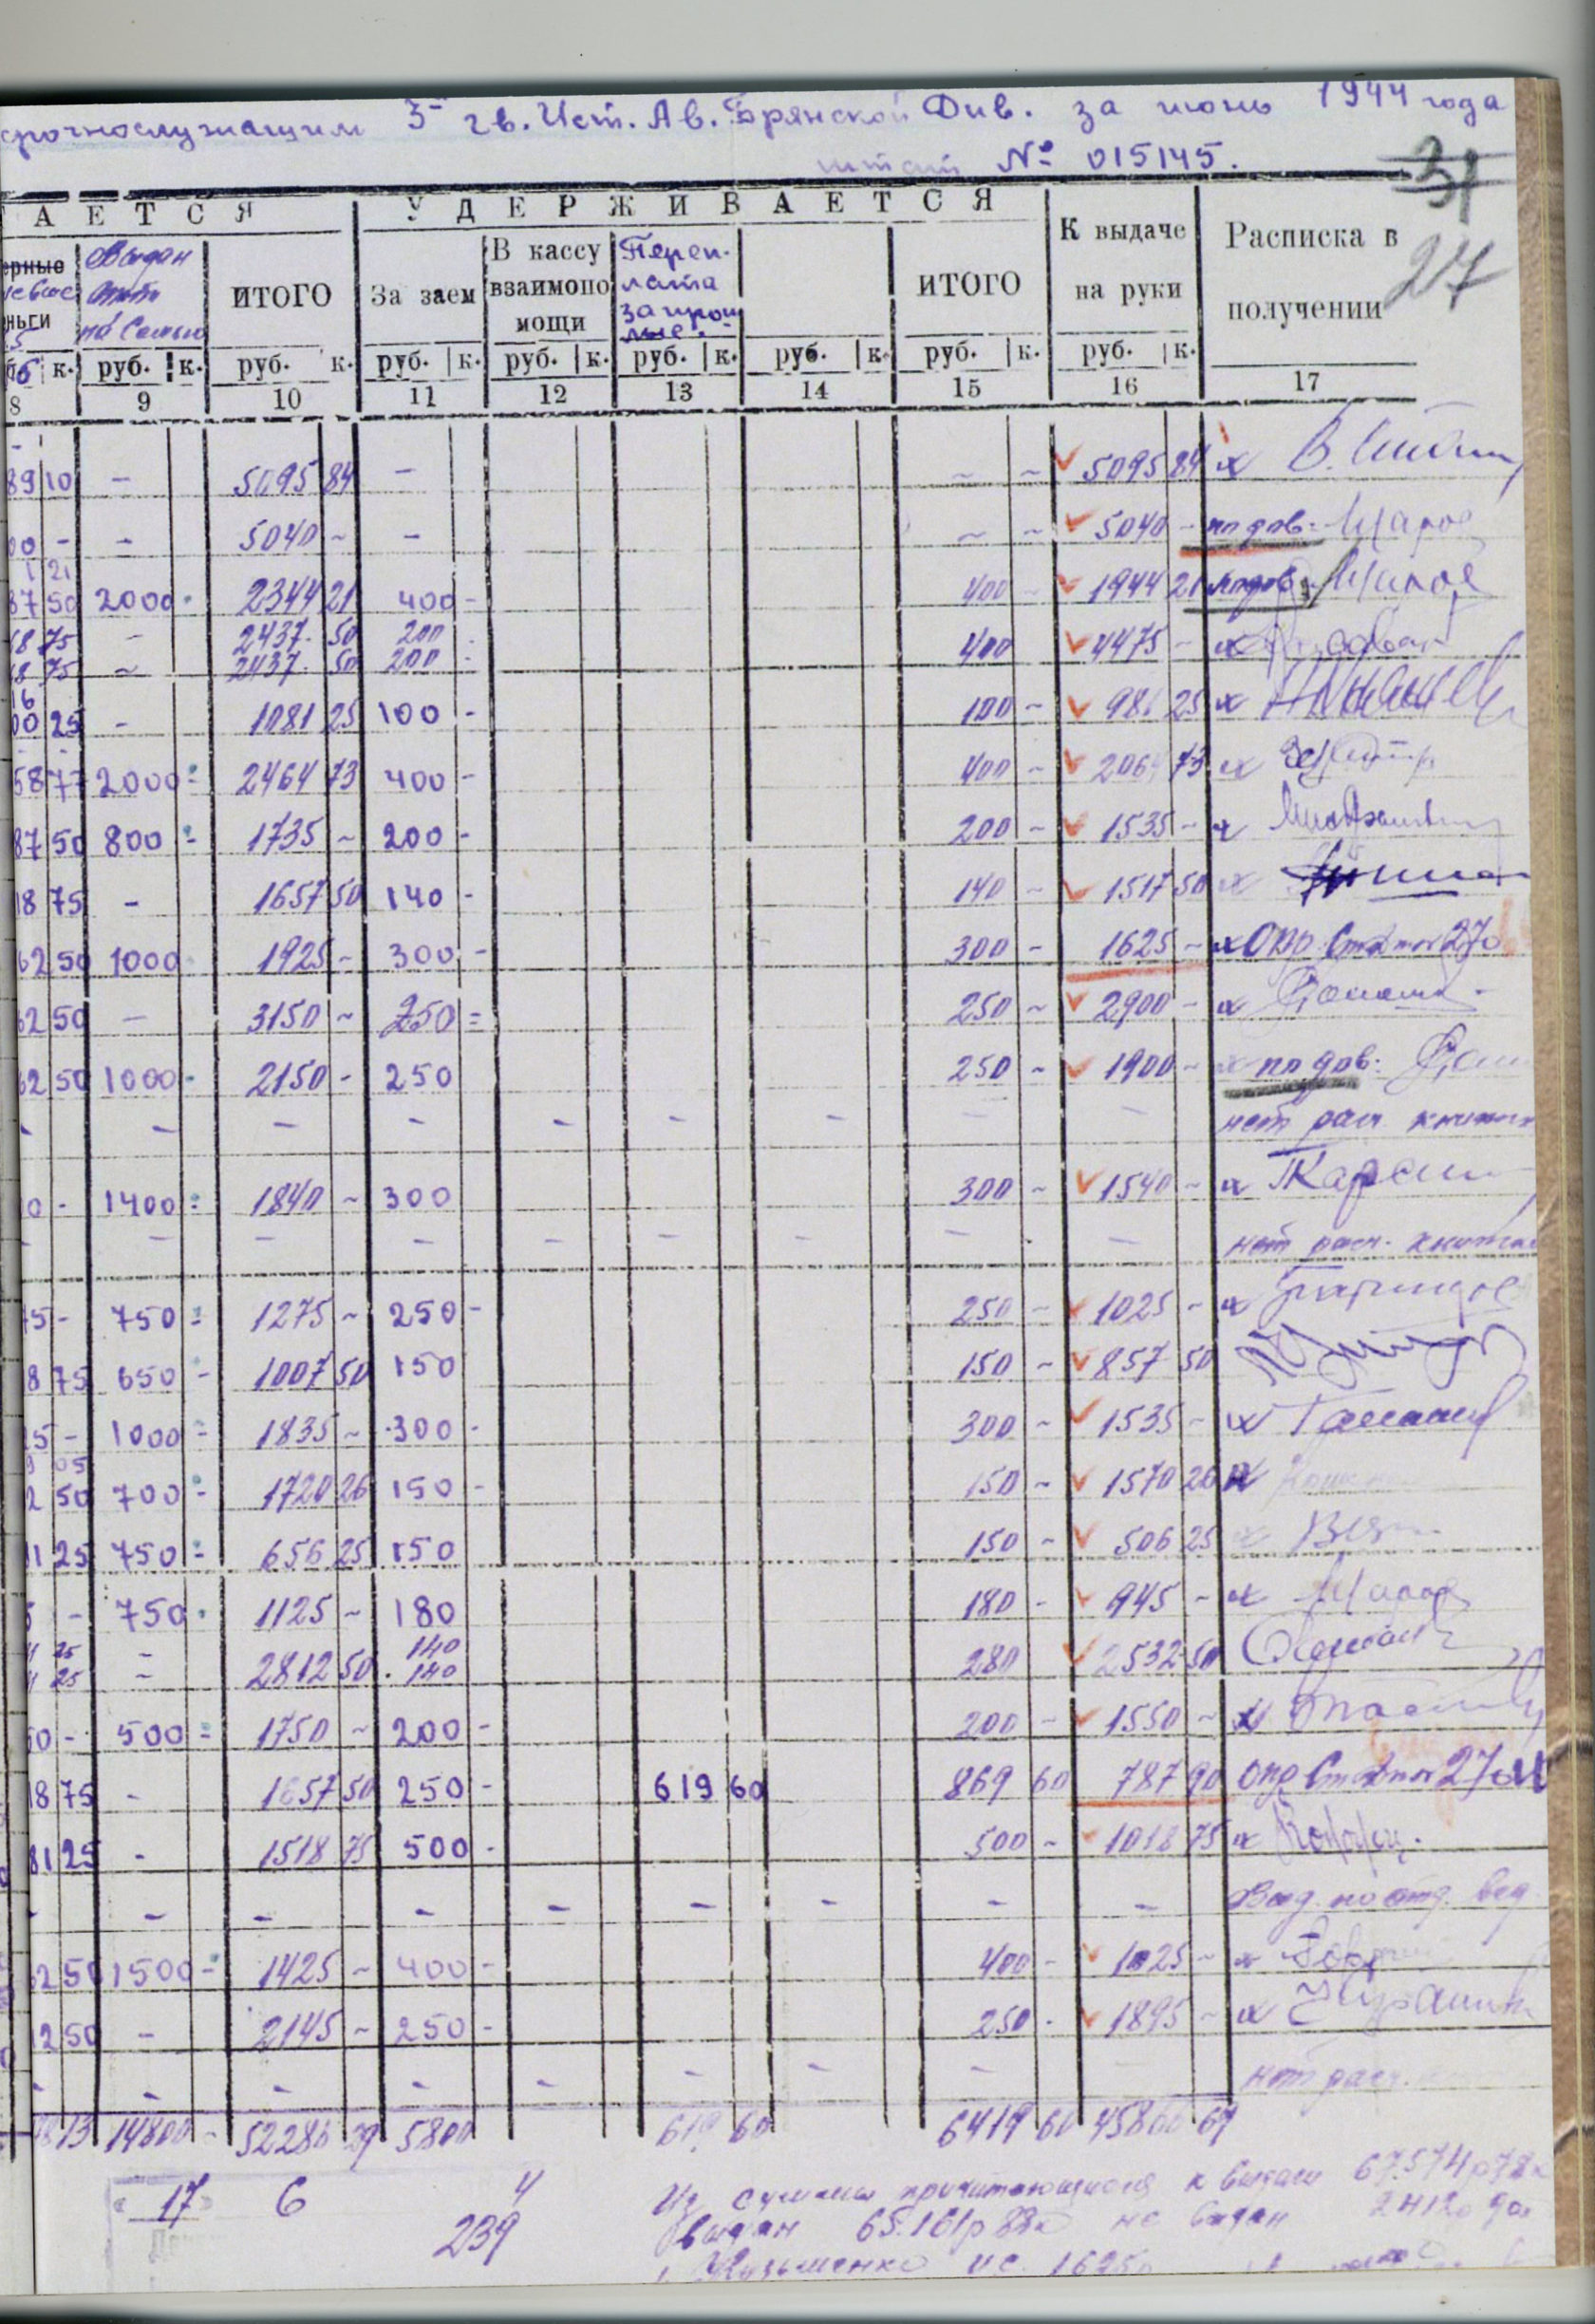 Так, в январе 1943 года он получил 5095 руб. 84 коп. в качестве оклада и надбавки за выслугу лет
